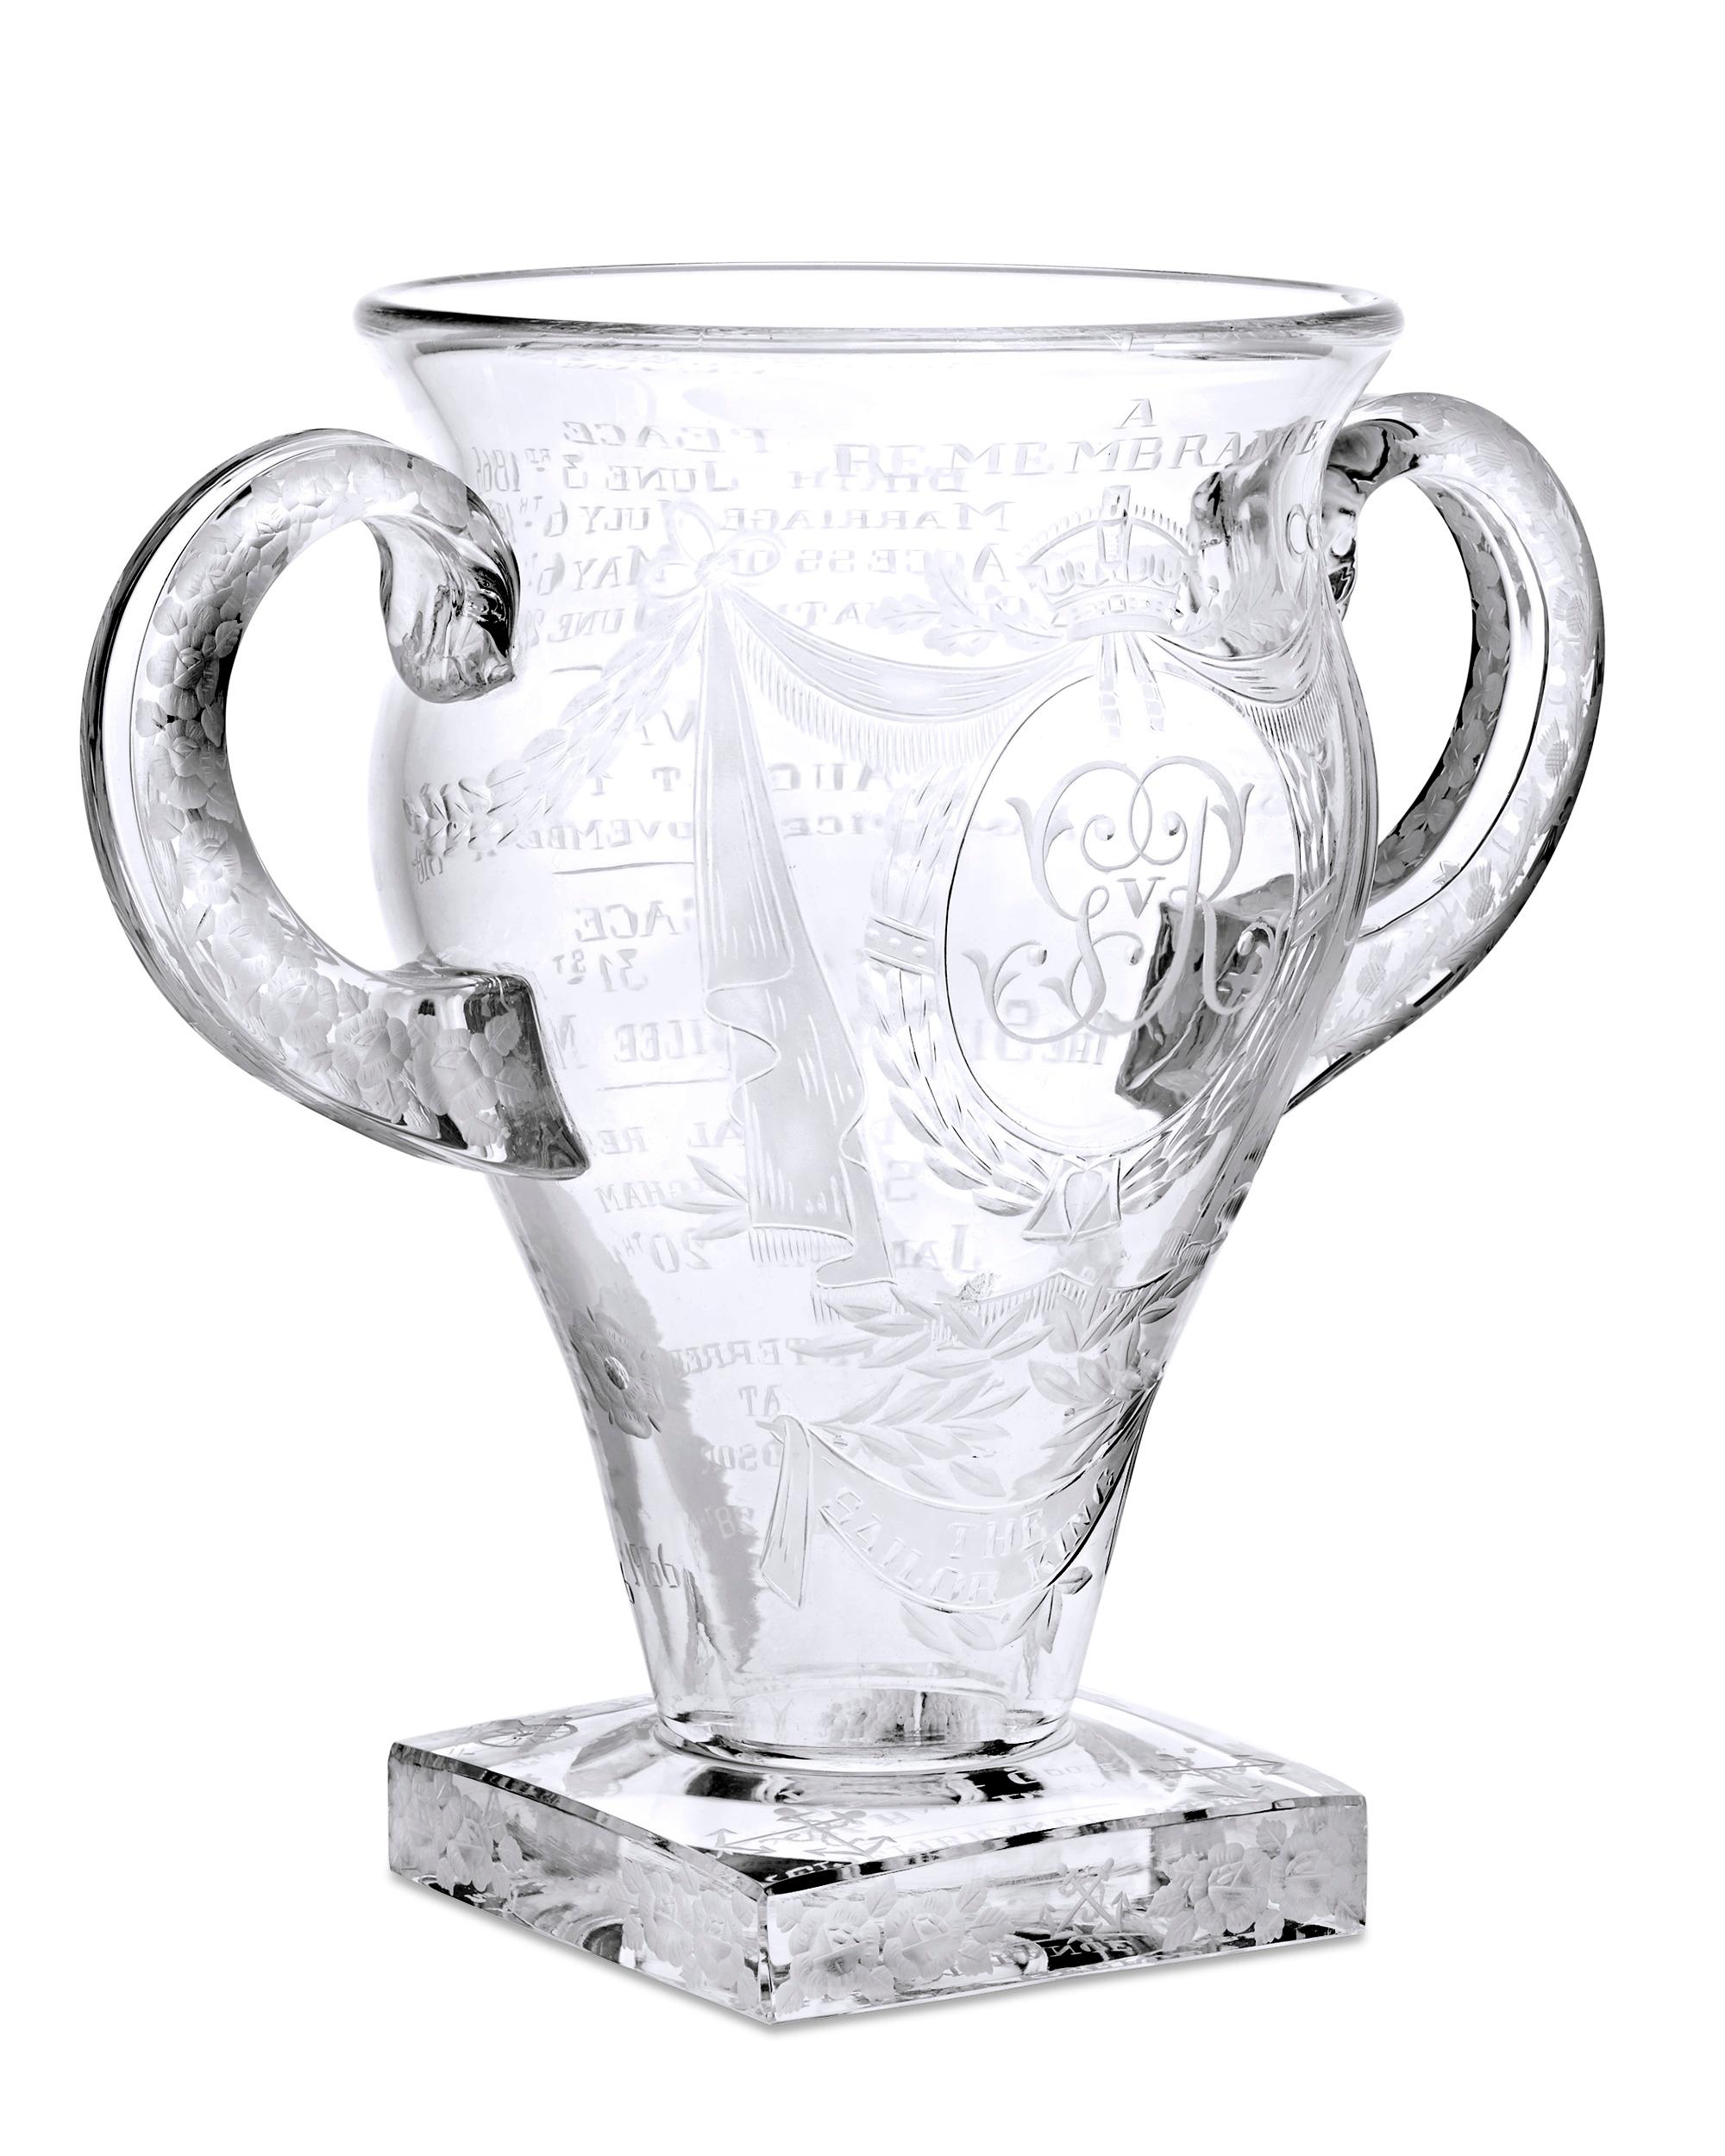 Diese Vase mit zwei Henkeln in limitierter Auflage erinnert an das Leben und die 26-jährige Regentschaft von König Georg V. Sie wurde nach dem Tod des Königs im Jahr 1936 von Thomas Goode & Co. geschaffen und ist eine beeindruckende Hommage an einen